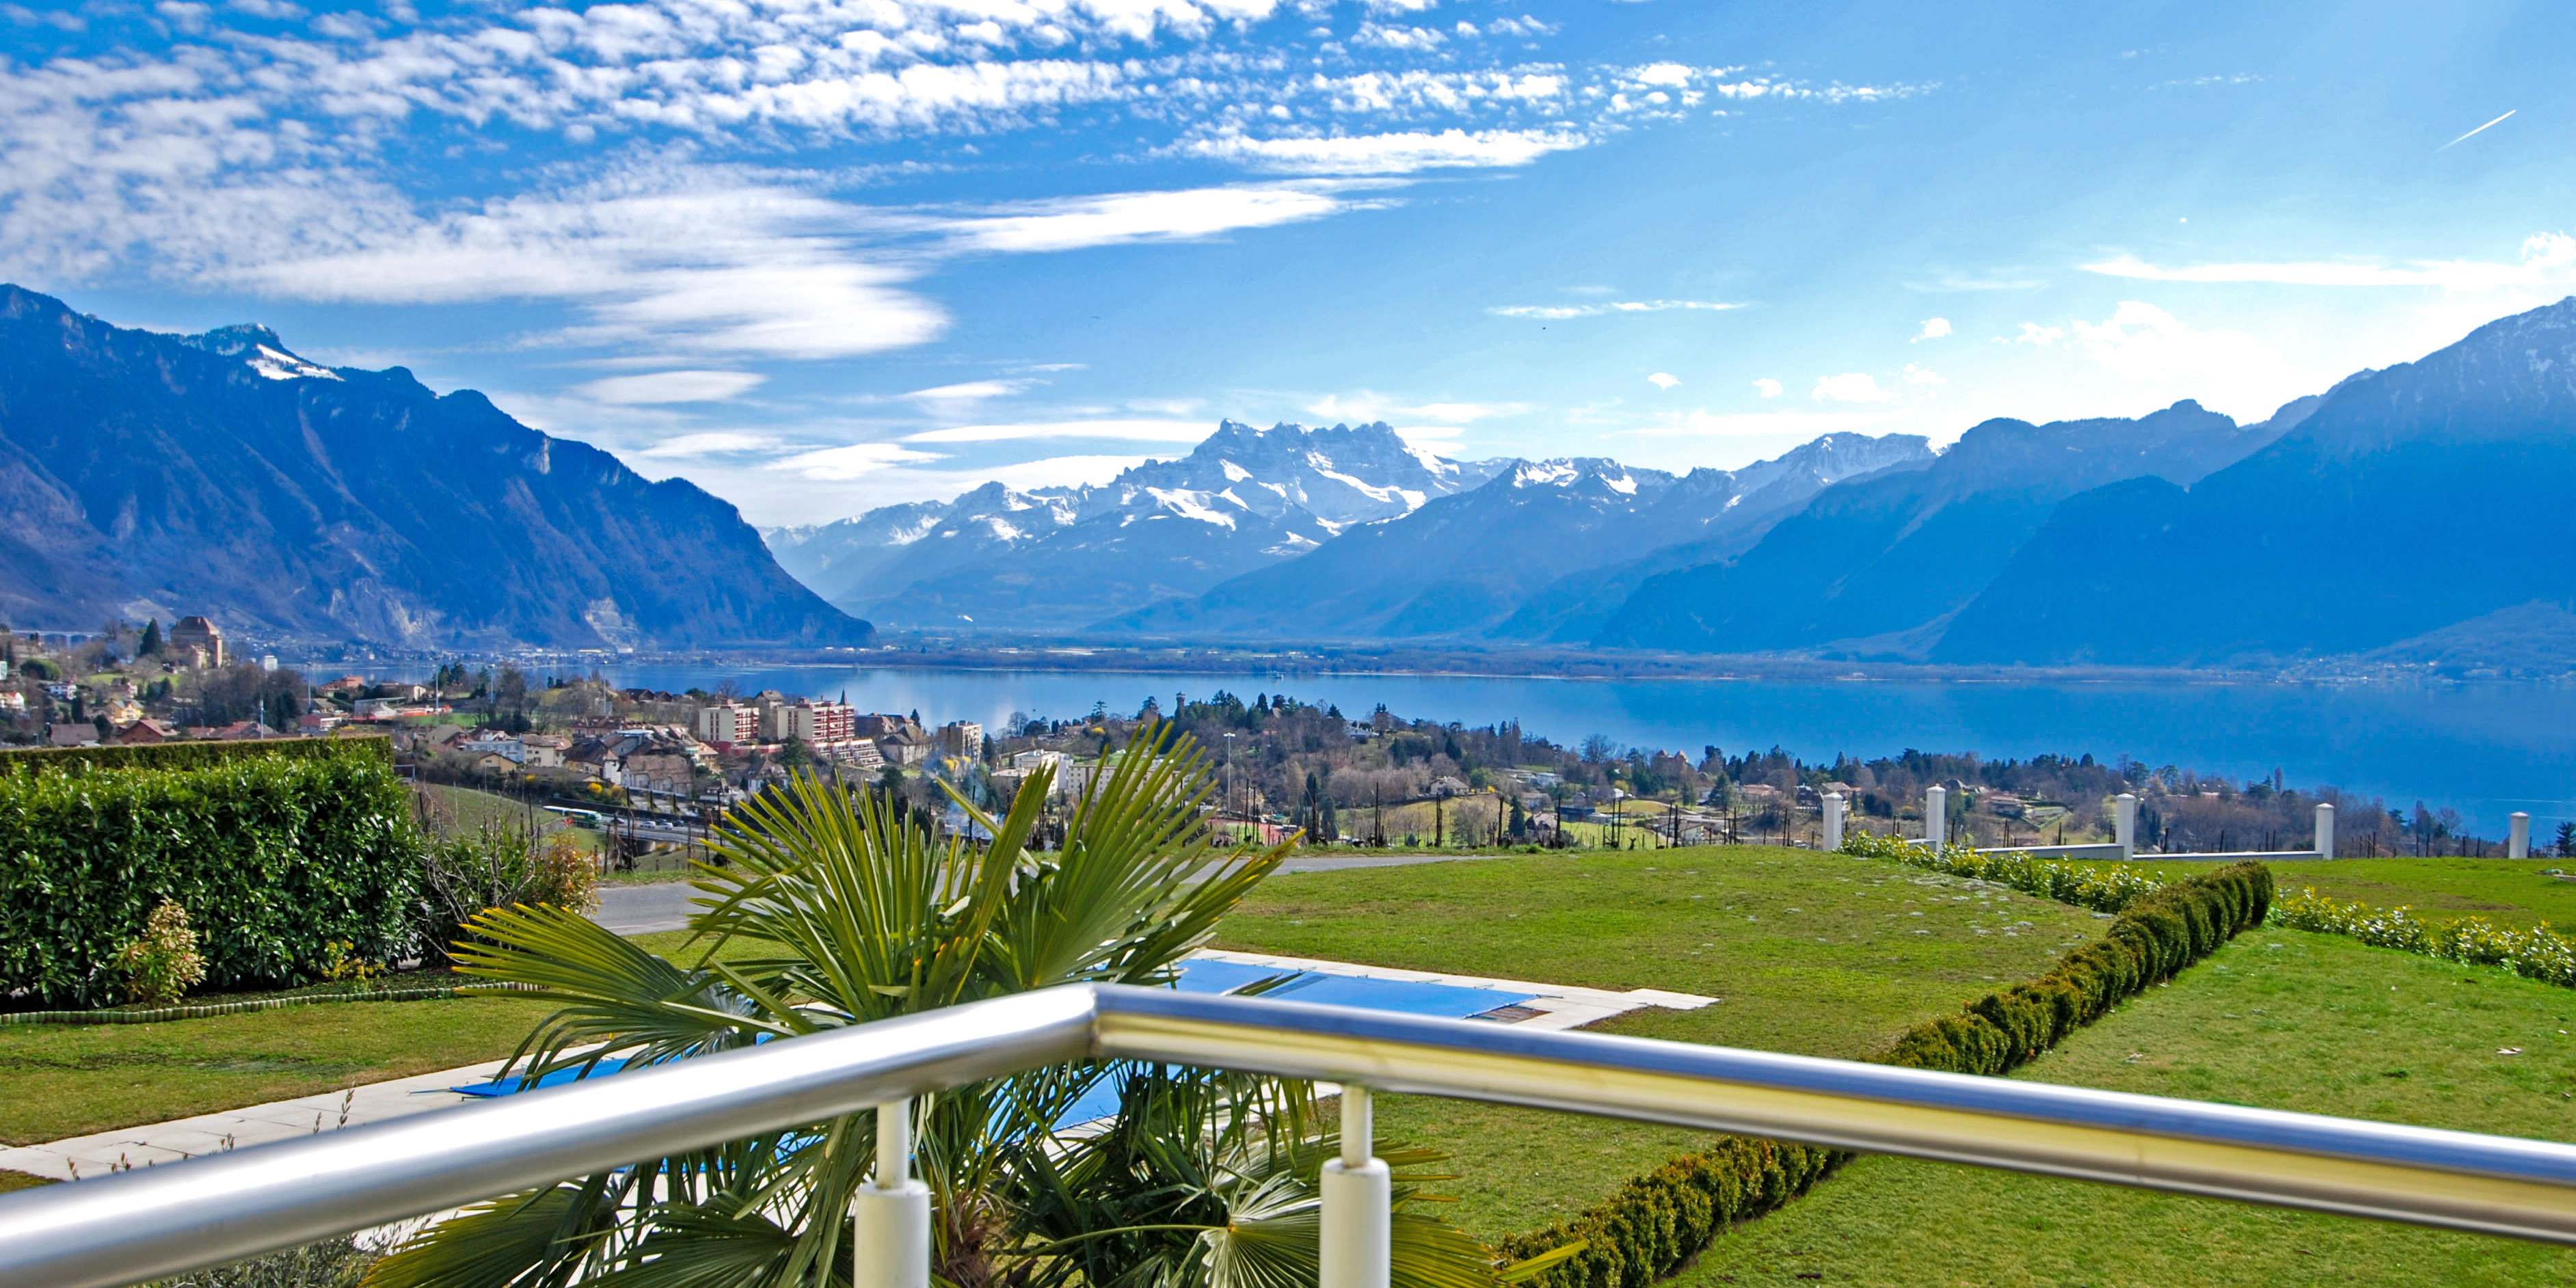 Luxus-Immobilien Schweiz Montreux Vevey La Tour-de-Peilz Blonay Saint-Légier Corseaux